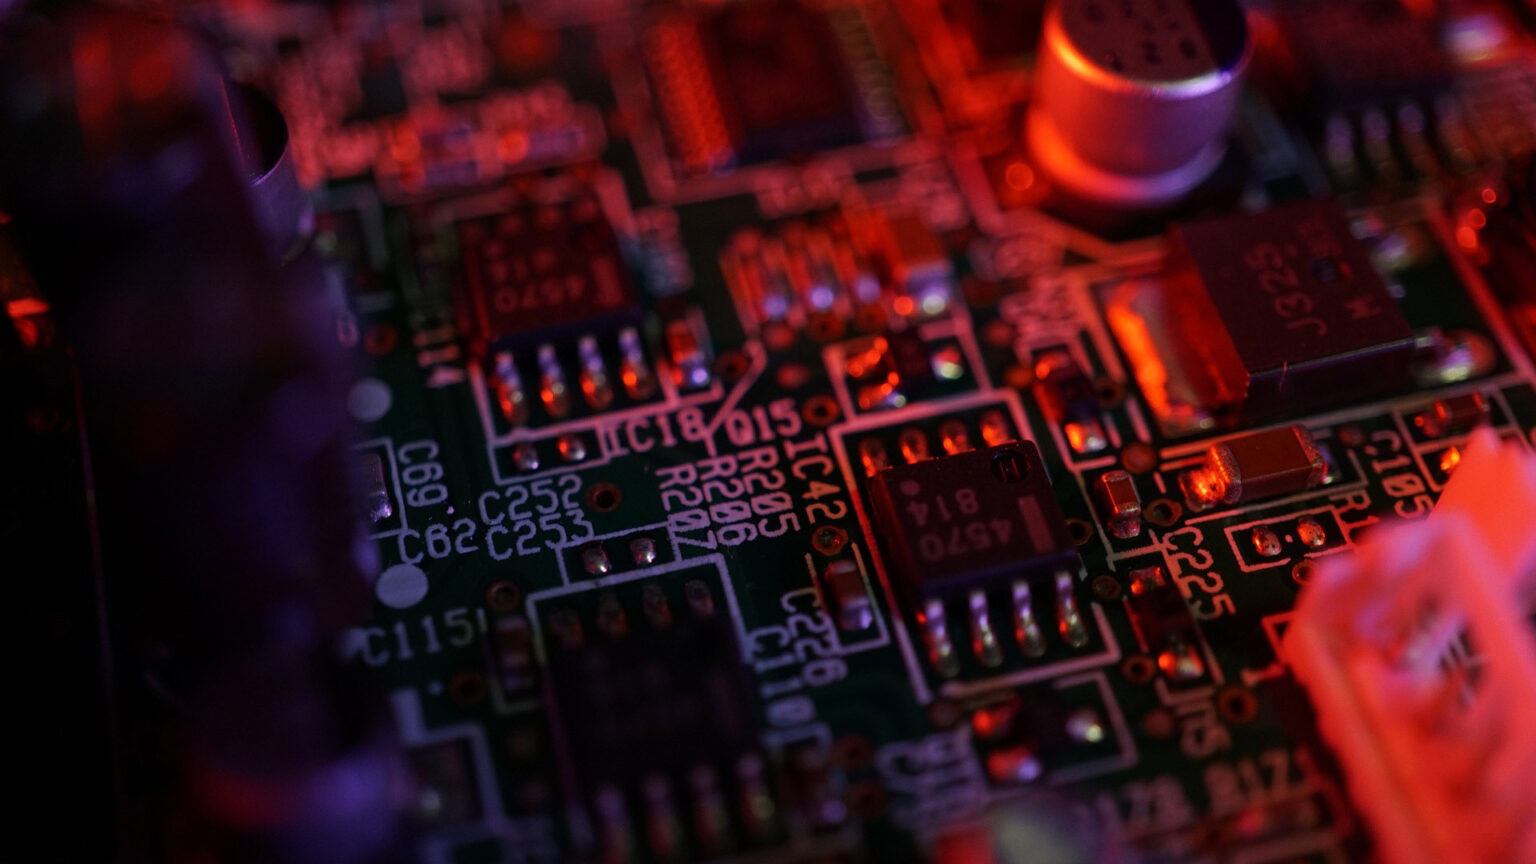 circuit board image